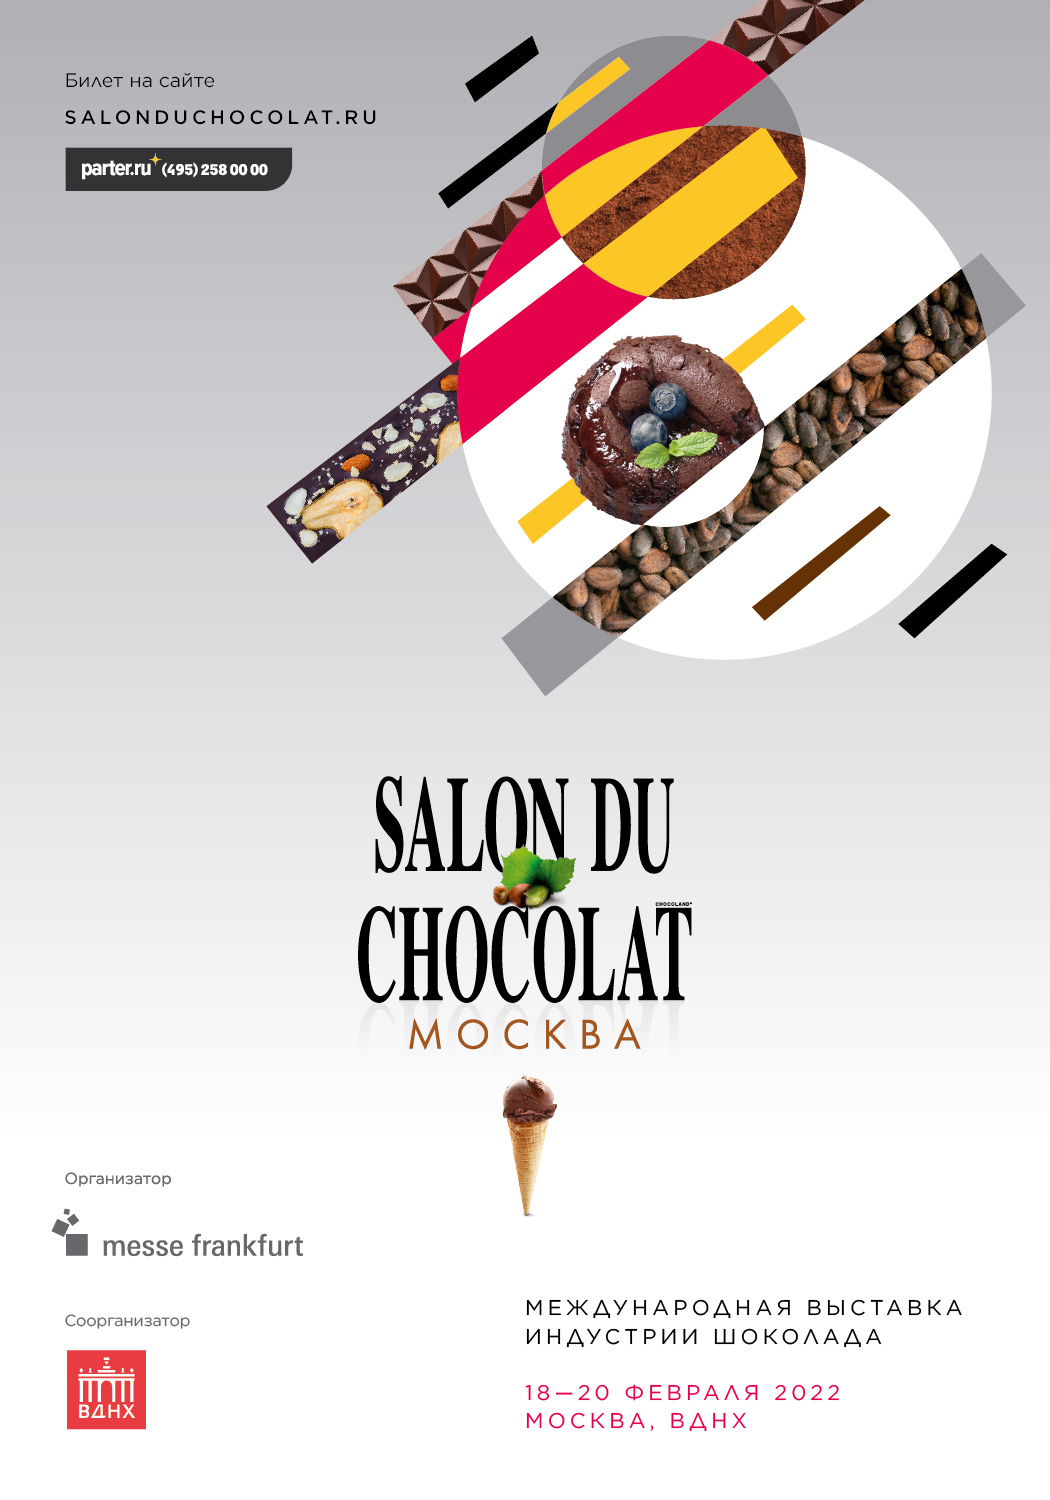 Москву ждет VIII Салон Шоколада — главное шоколадное событие страны!